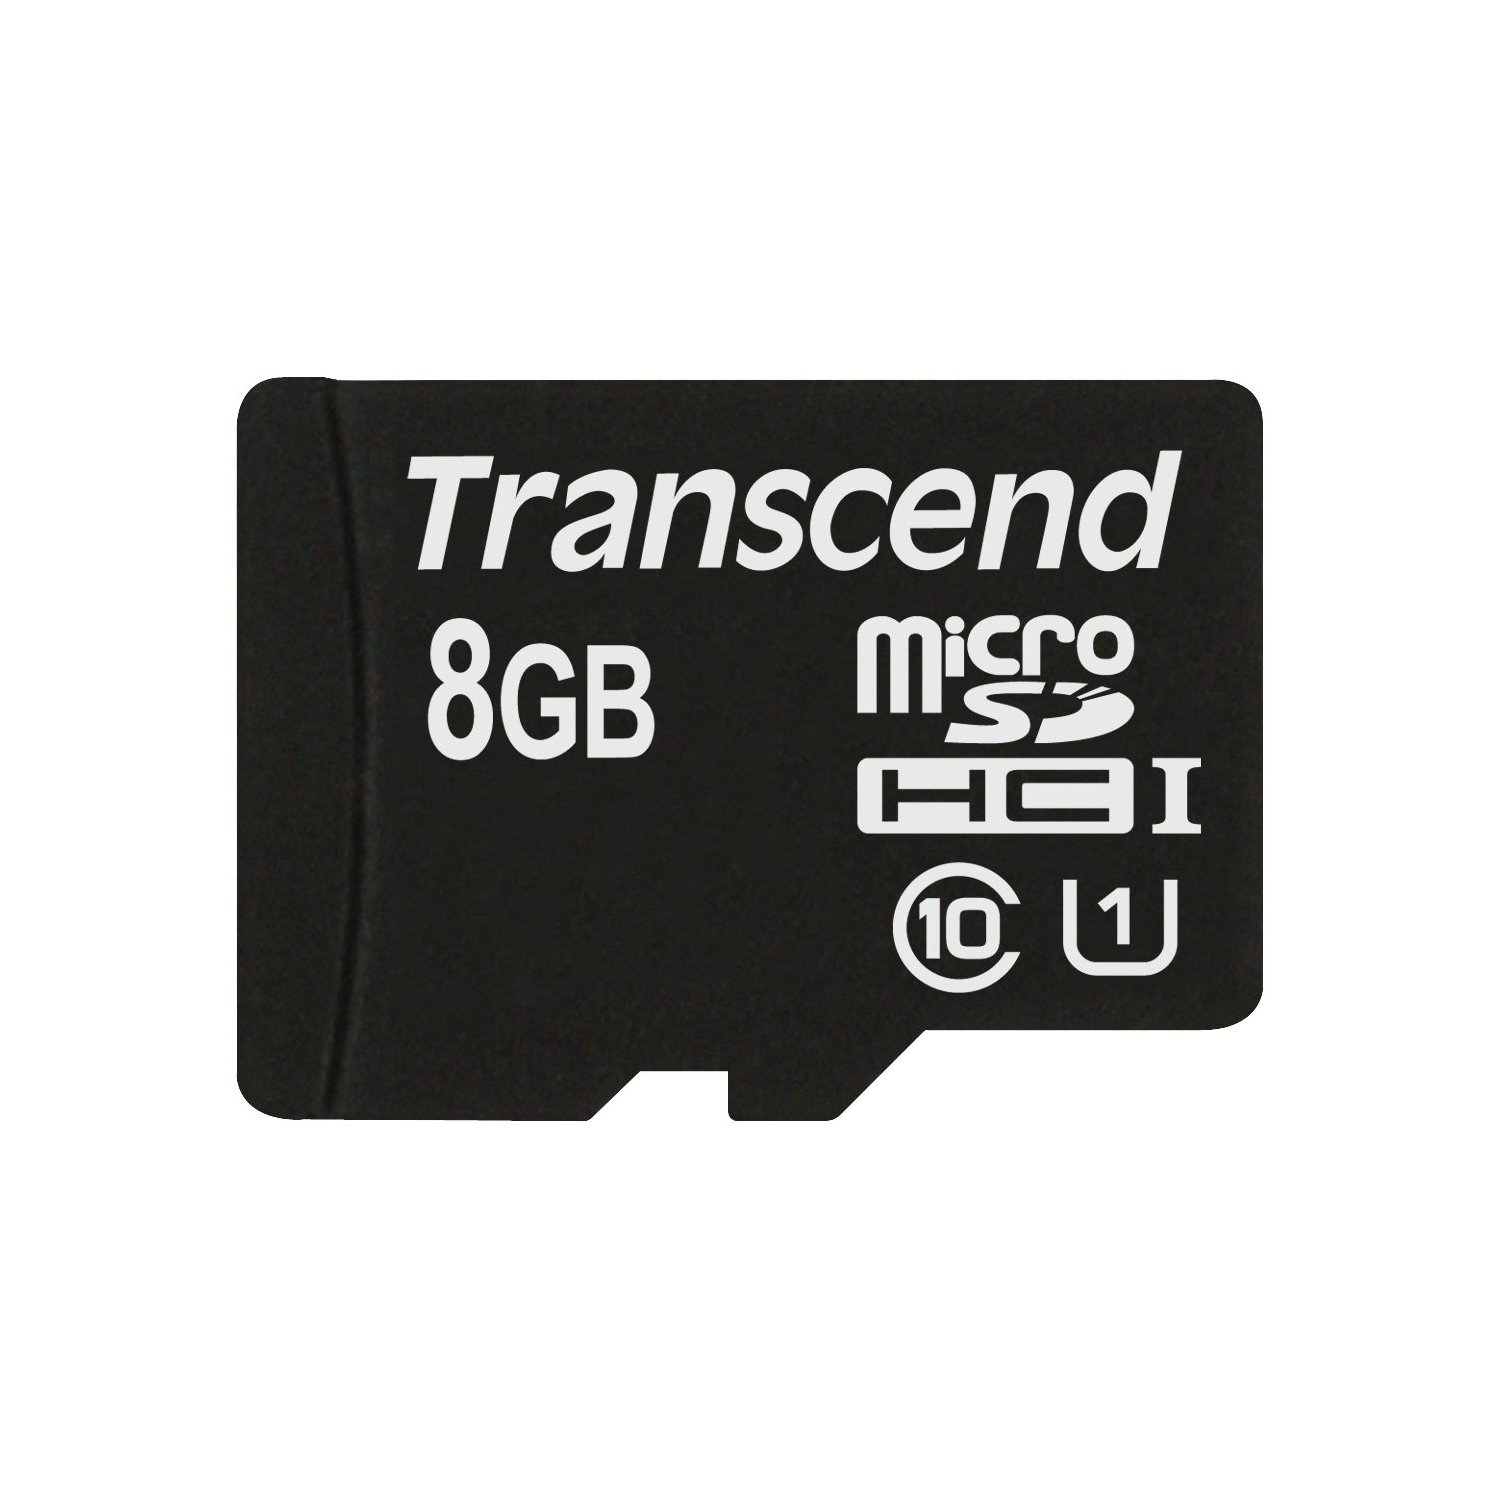 Transcend microSDHC Class 10 UHS-I (Premium)